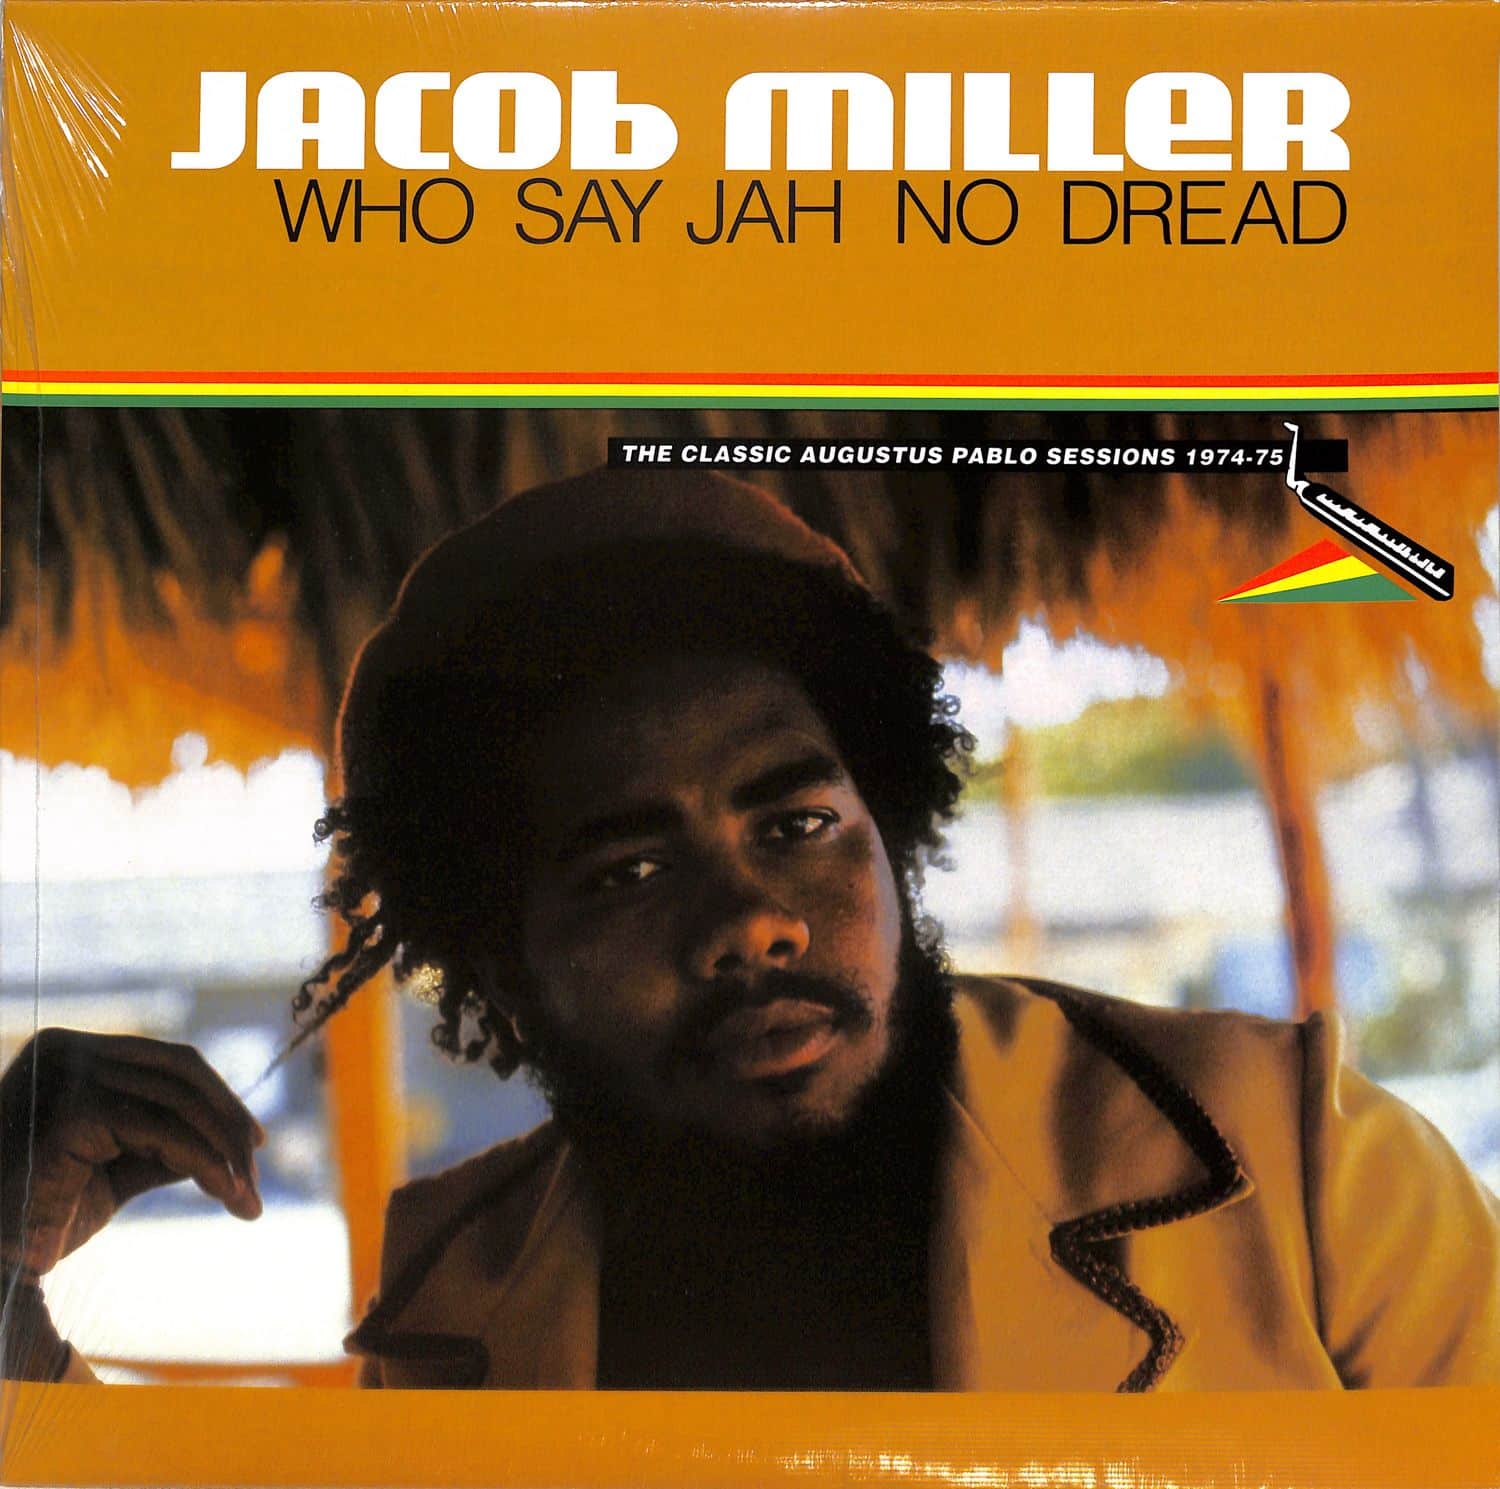 Jacob Miller - WHO SAY JAH NO DREAD 